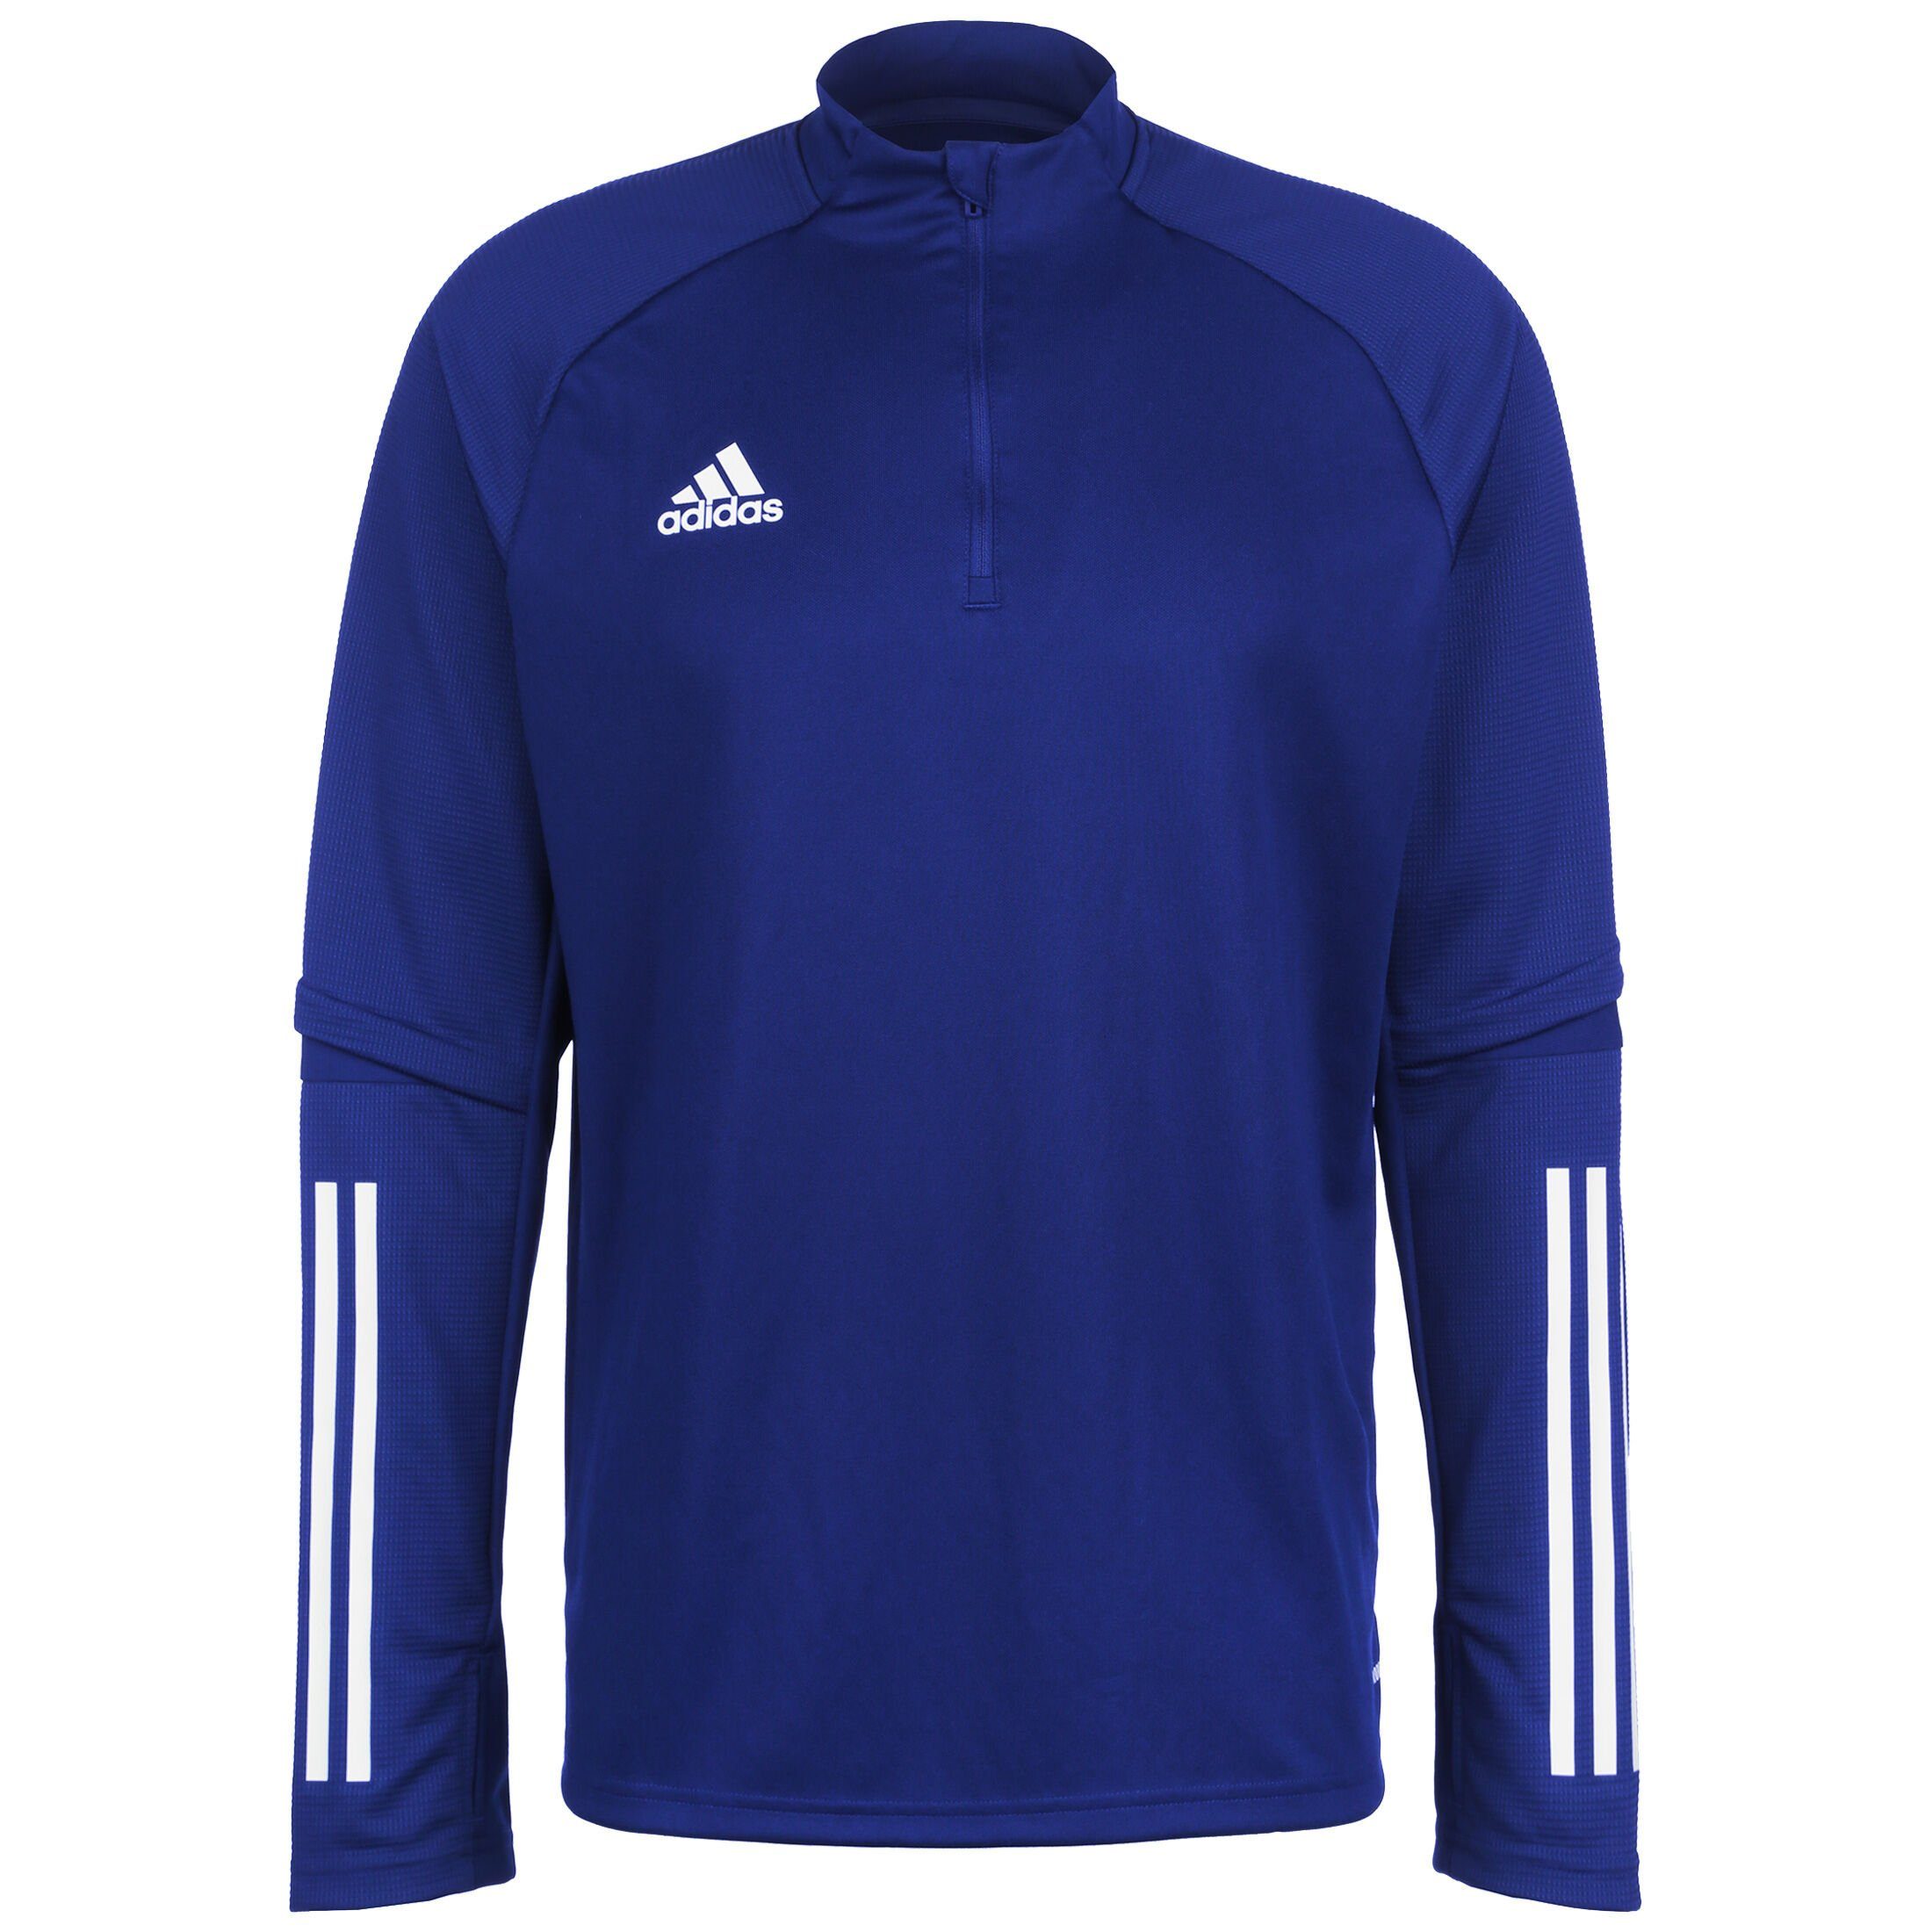 20 blau weiß Performance Trainingssweat / Sweatshirt Condivo adidas Herren